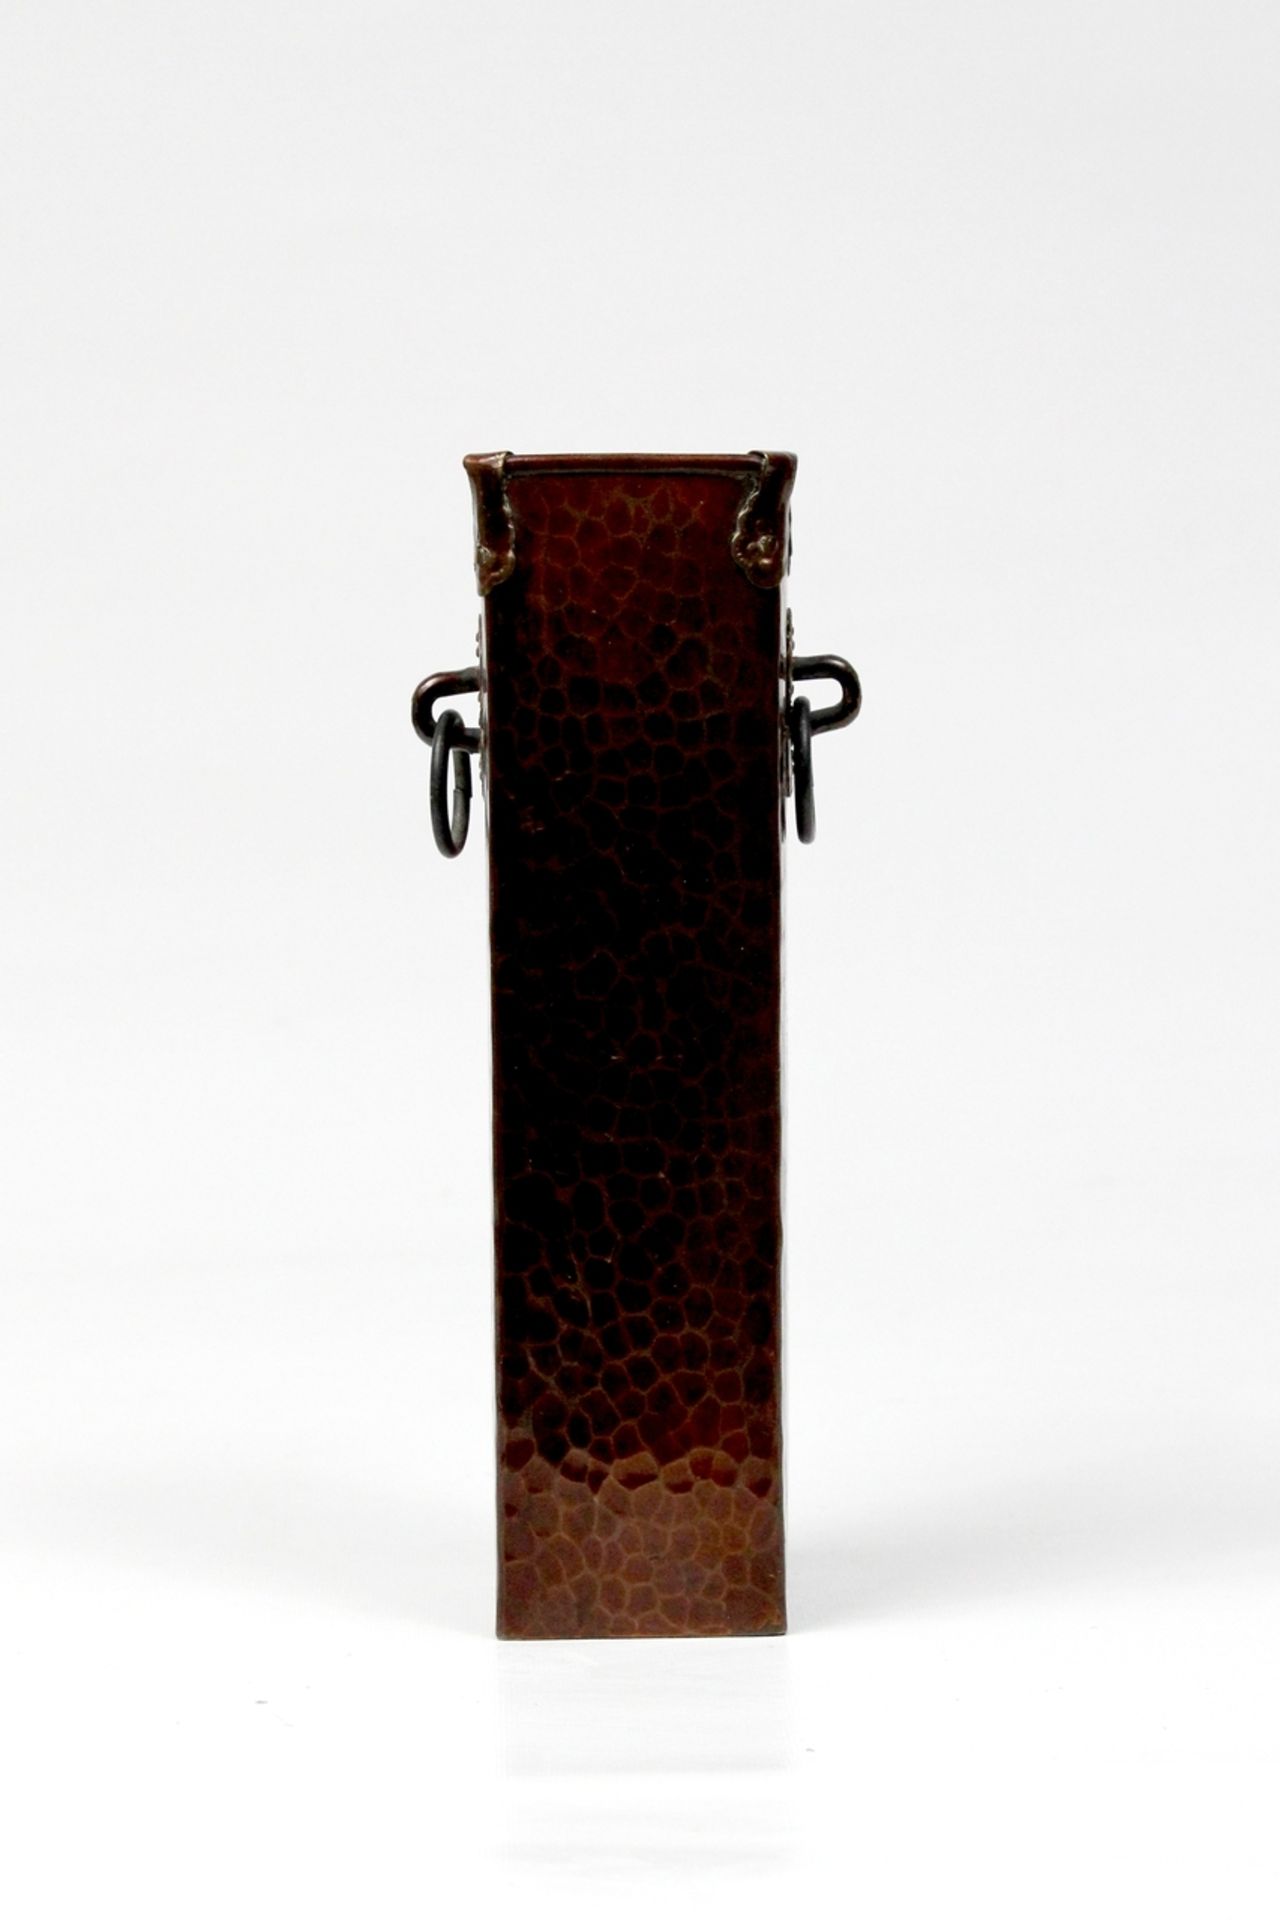 Japan Pinselhalter aus gehämmertem Kupfer in Schlangenhautoptik, Meiji Periode 19.Jhdt.